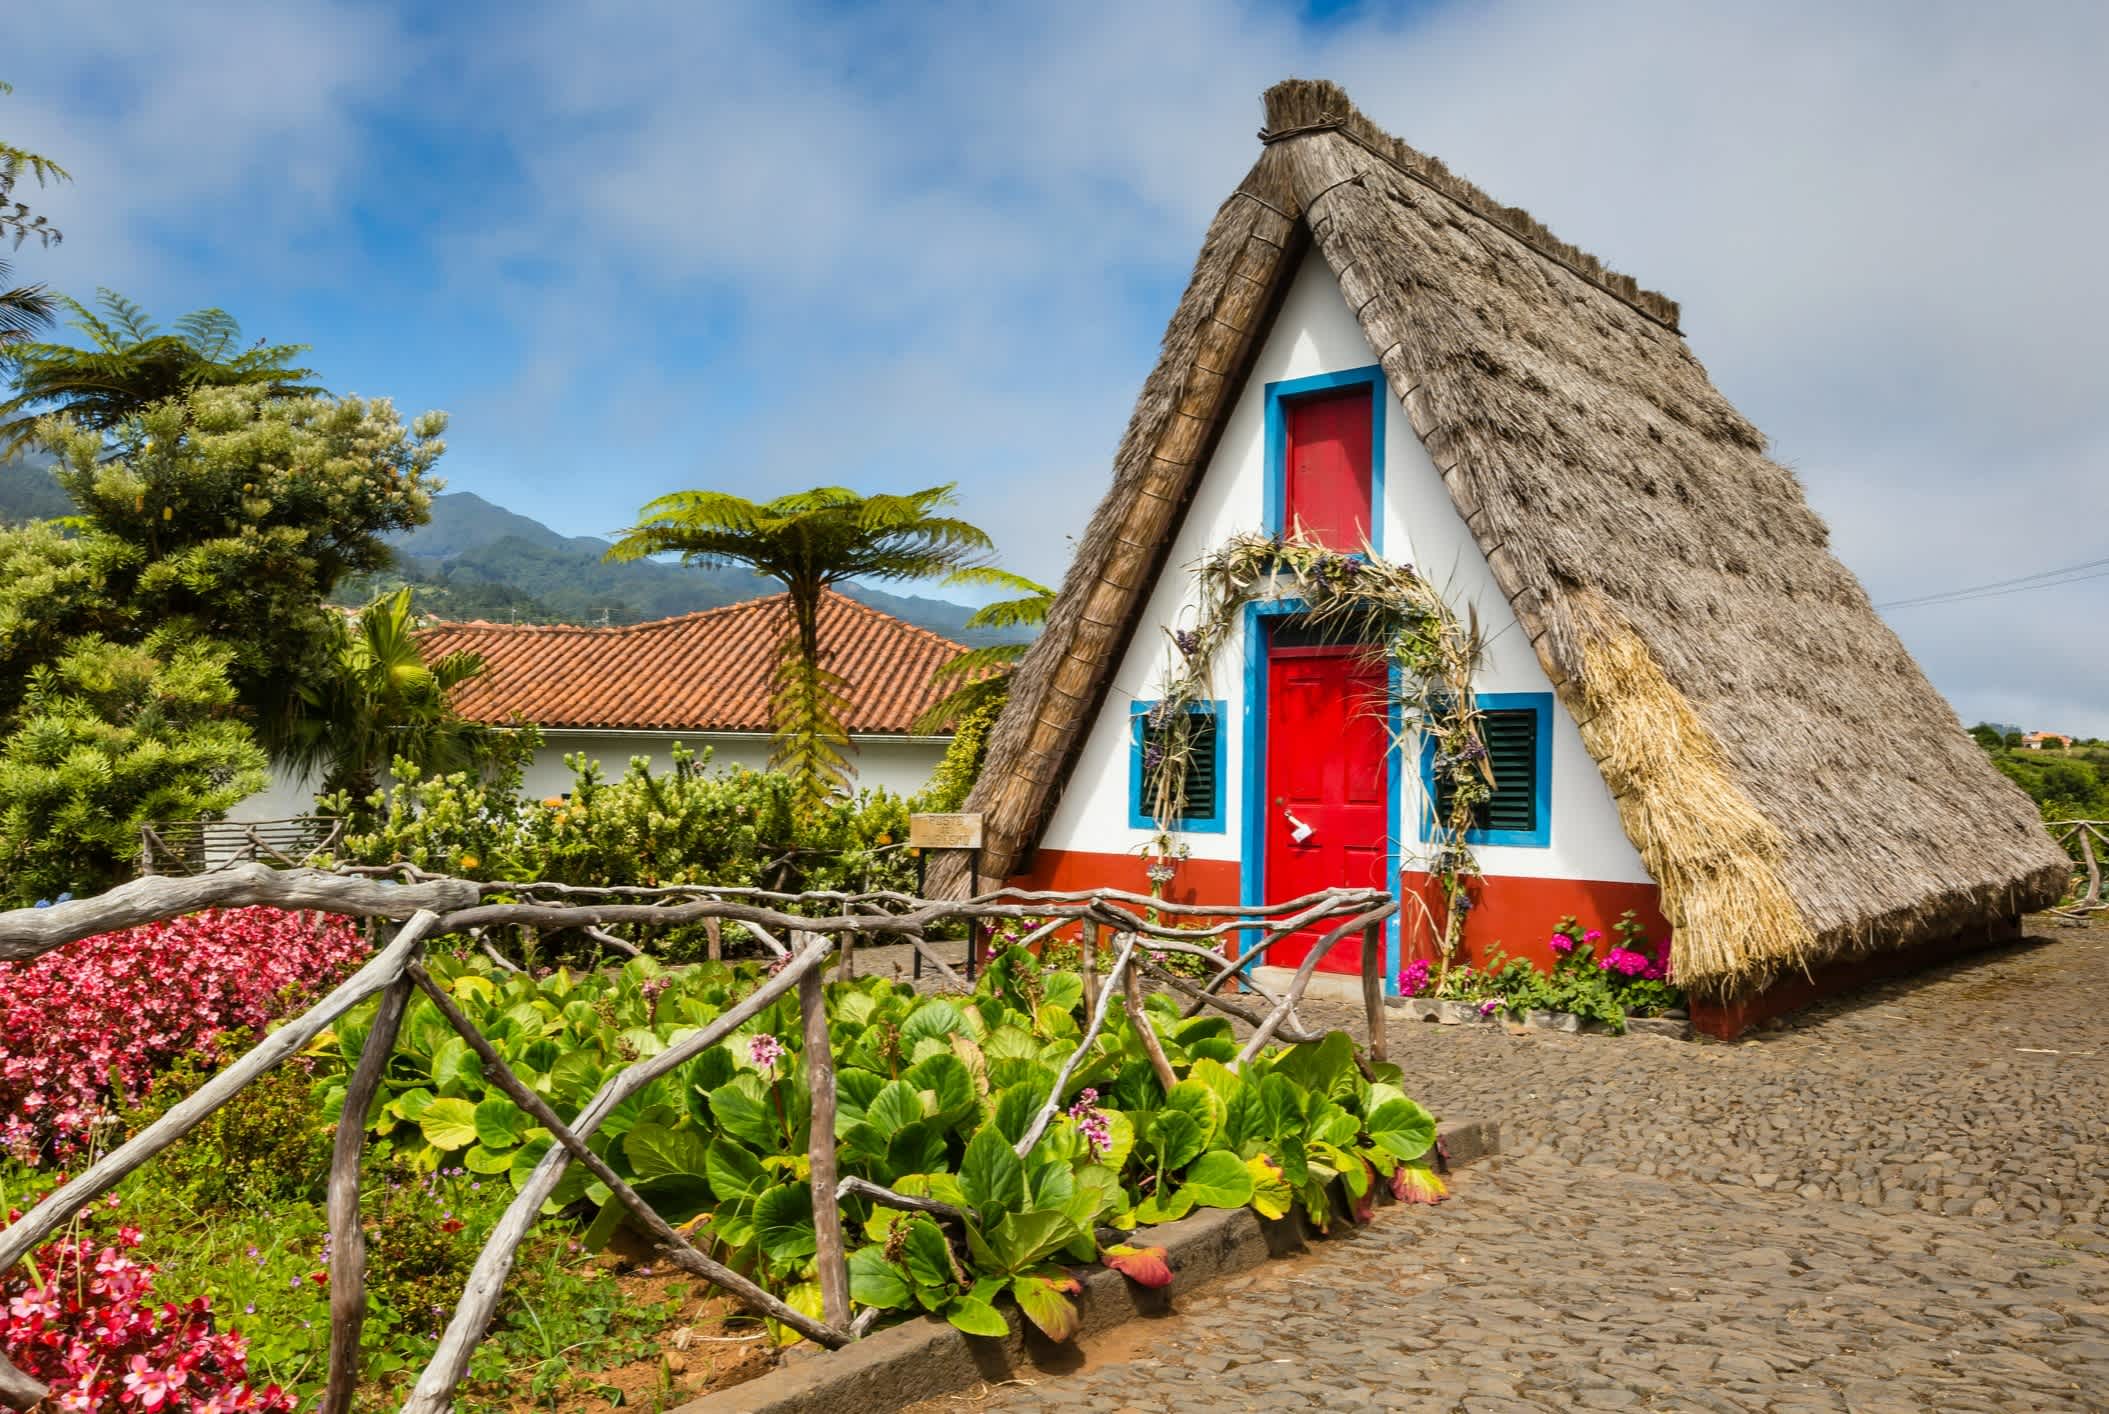 Une maison rurale traditionnelle à Santana, Madère, Portugal.

